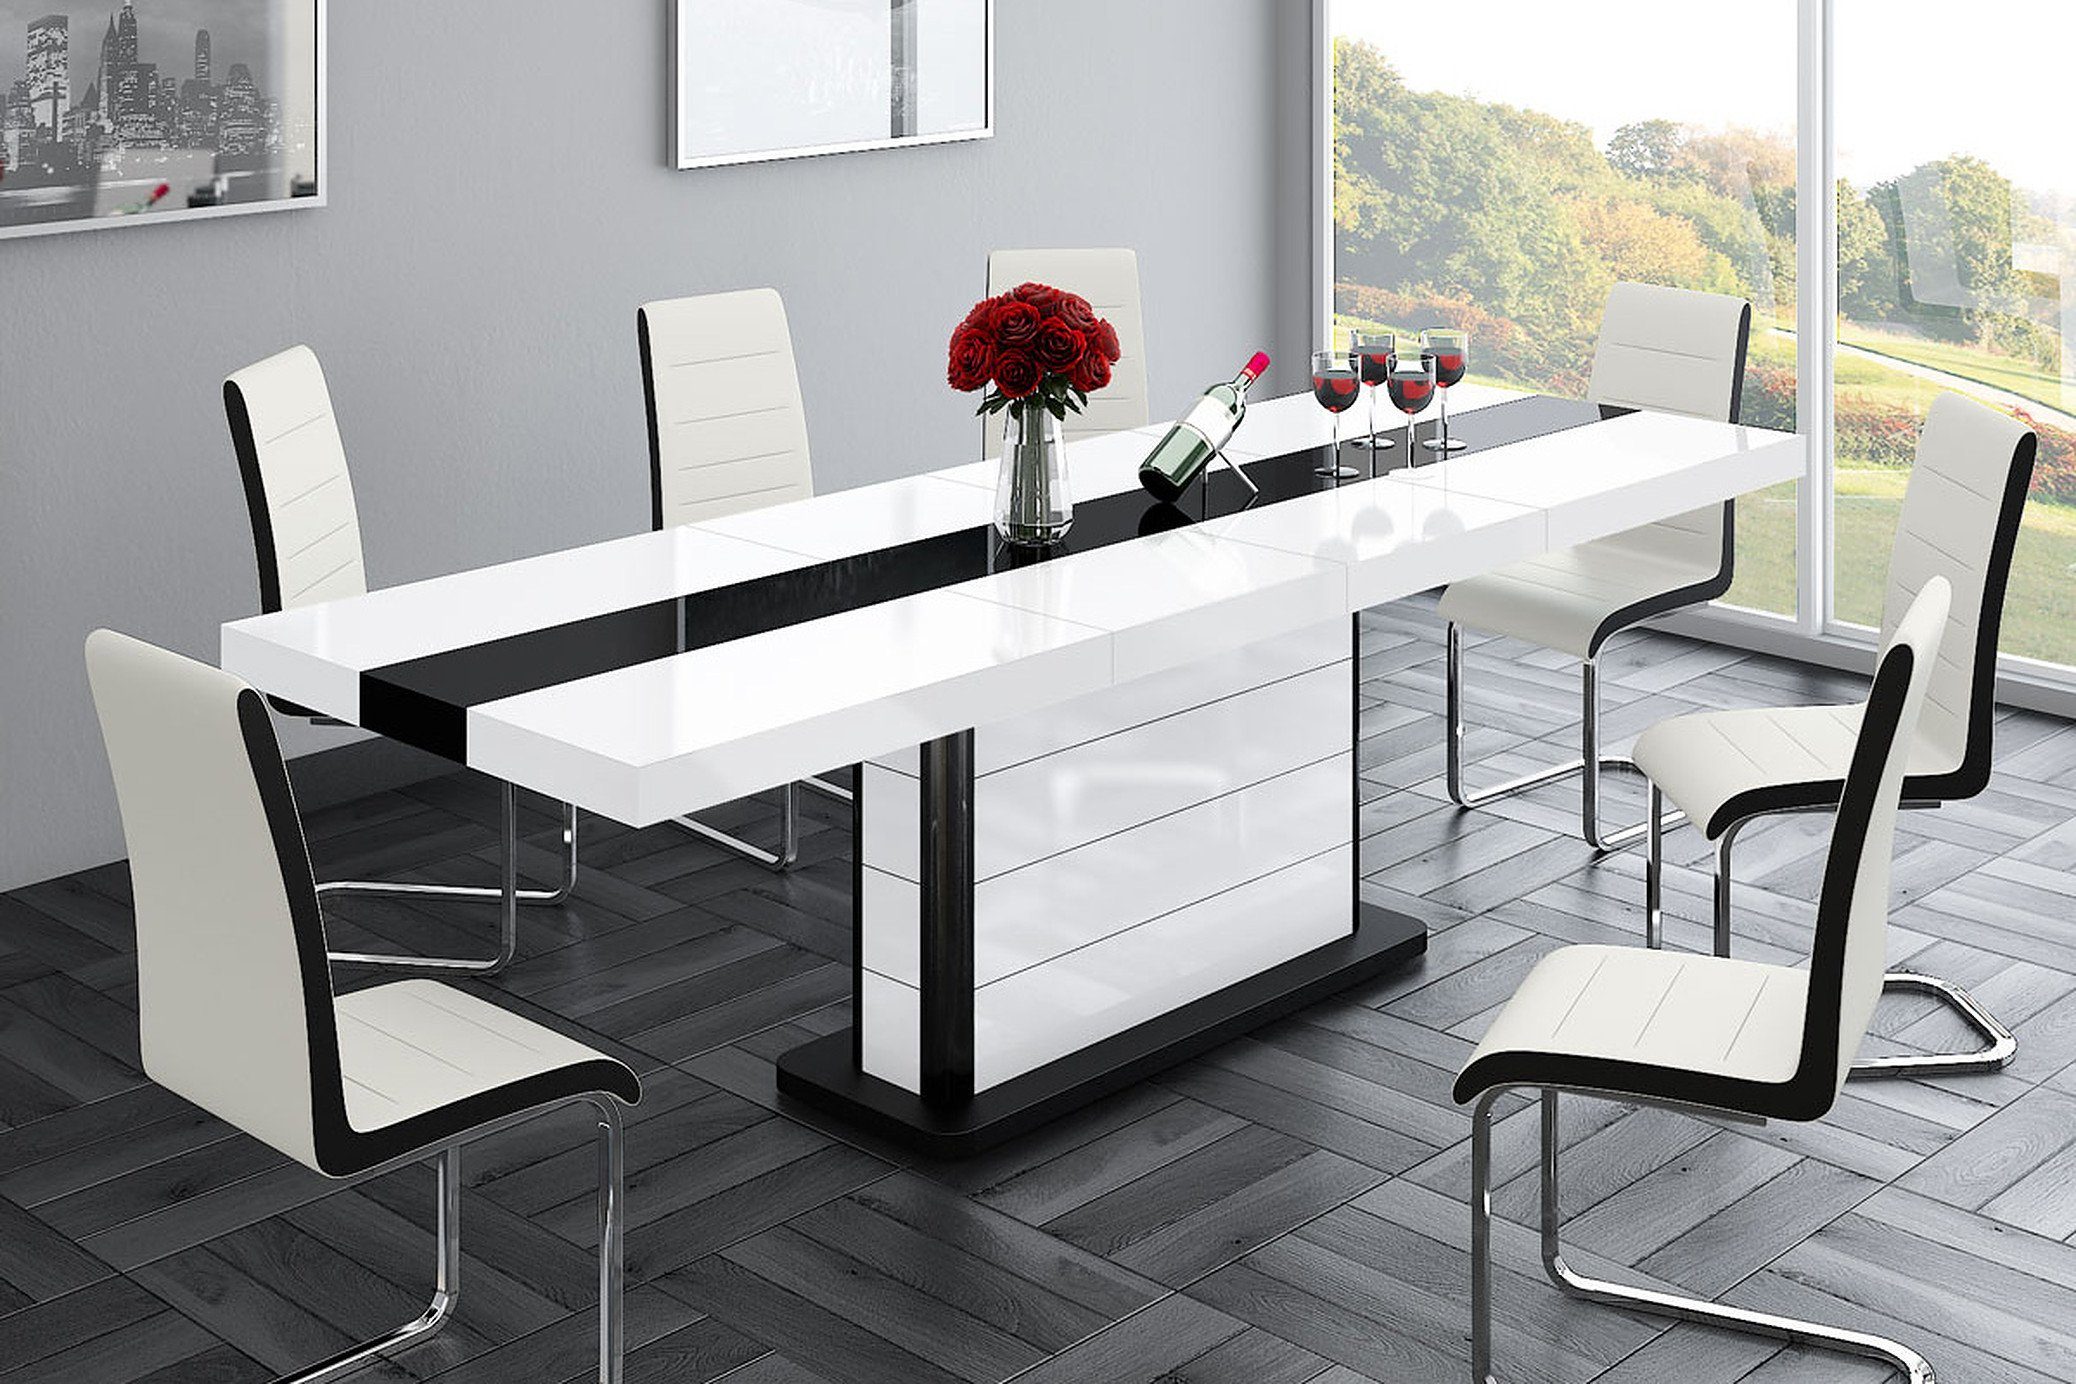 designimpex Esstisch Design Hochglanz cm - Schwarz 260 160 ausziehbar bis Tisch Weiß HE-555